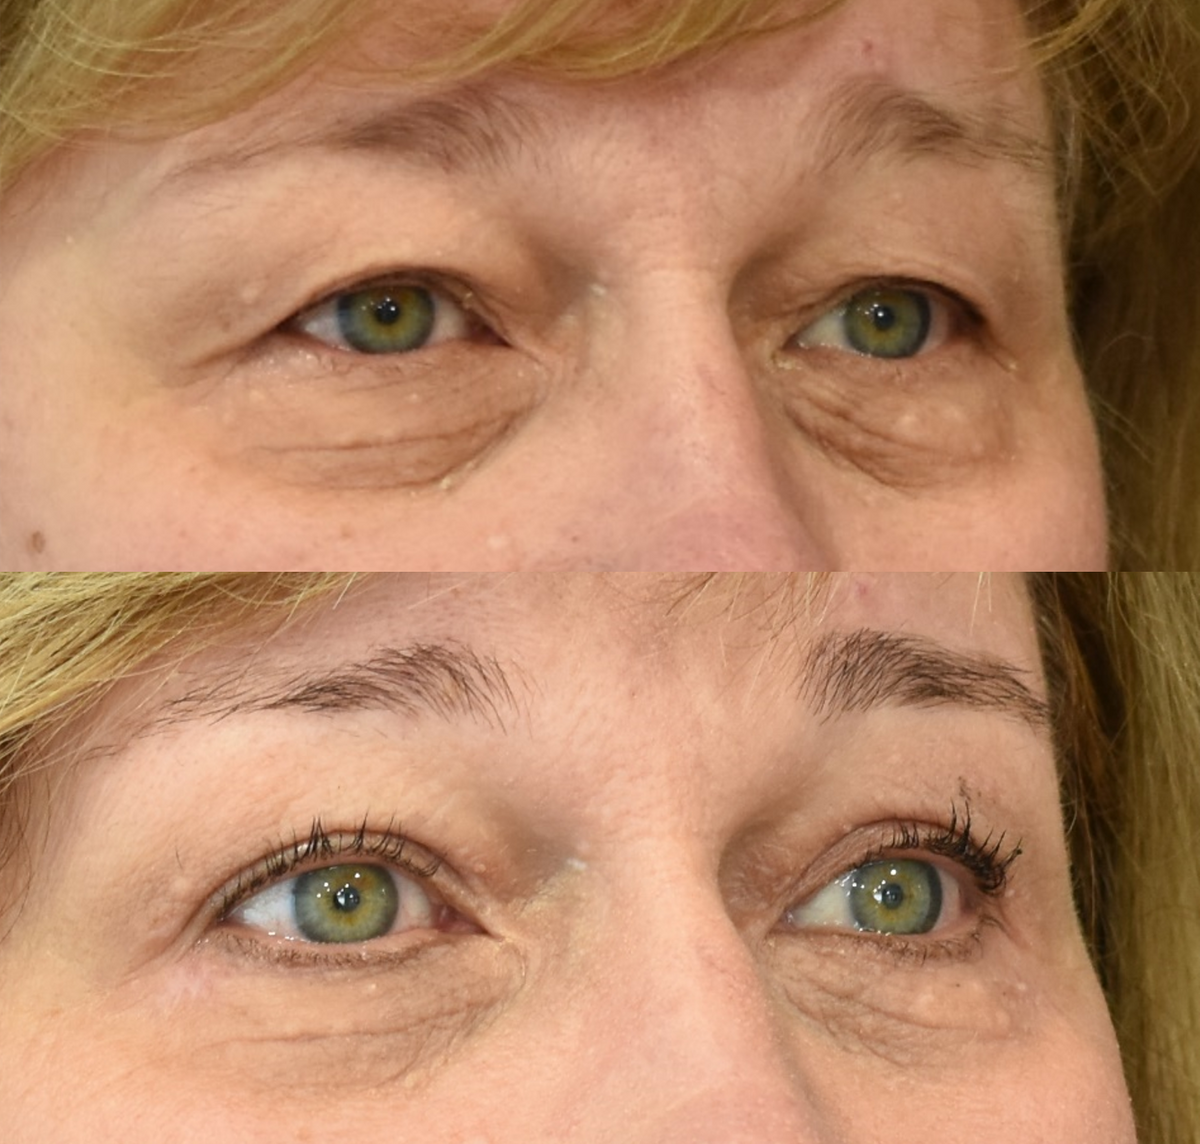 Upper Eyelid Surgery (Blepharoplasty) and Lower Eyelid Surgery (Blepharoplasty) Before & After in Cincinnati, Ohio